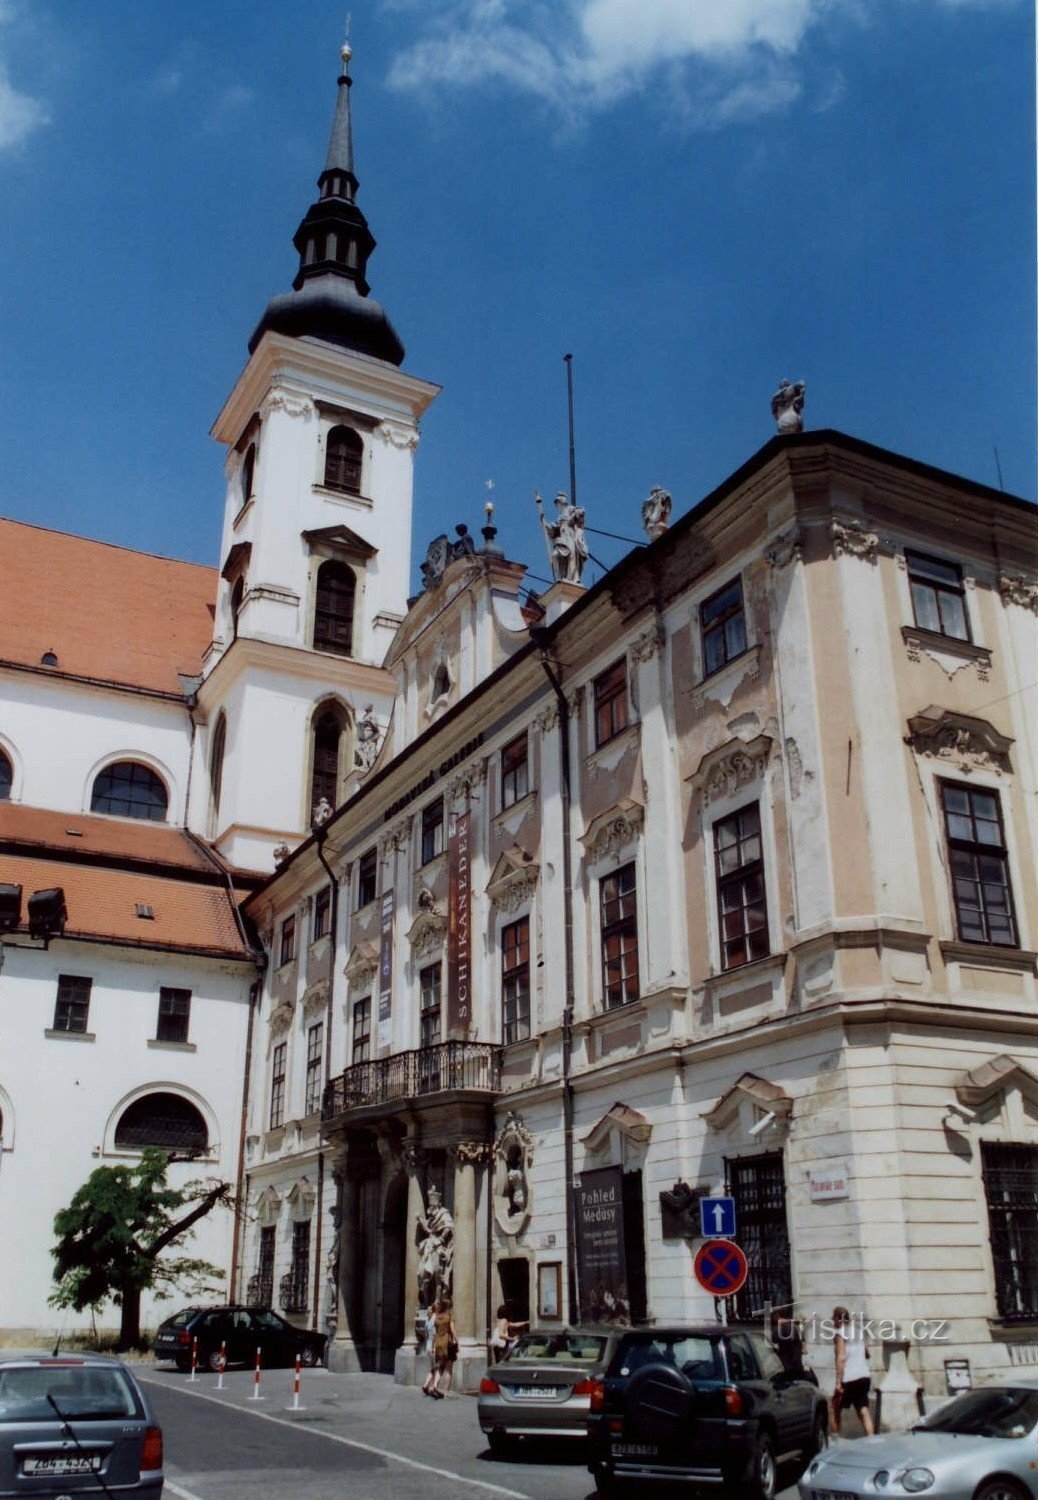 Palatul guvernatorului și biserica Sf. Tomas